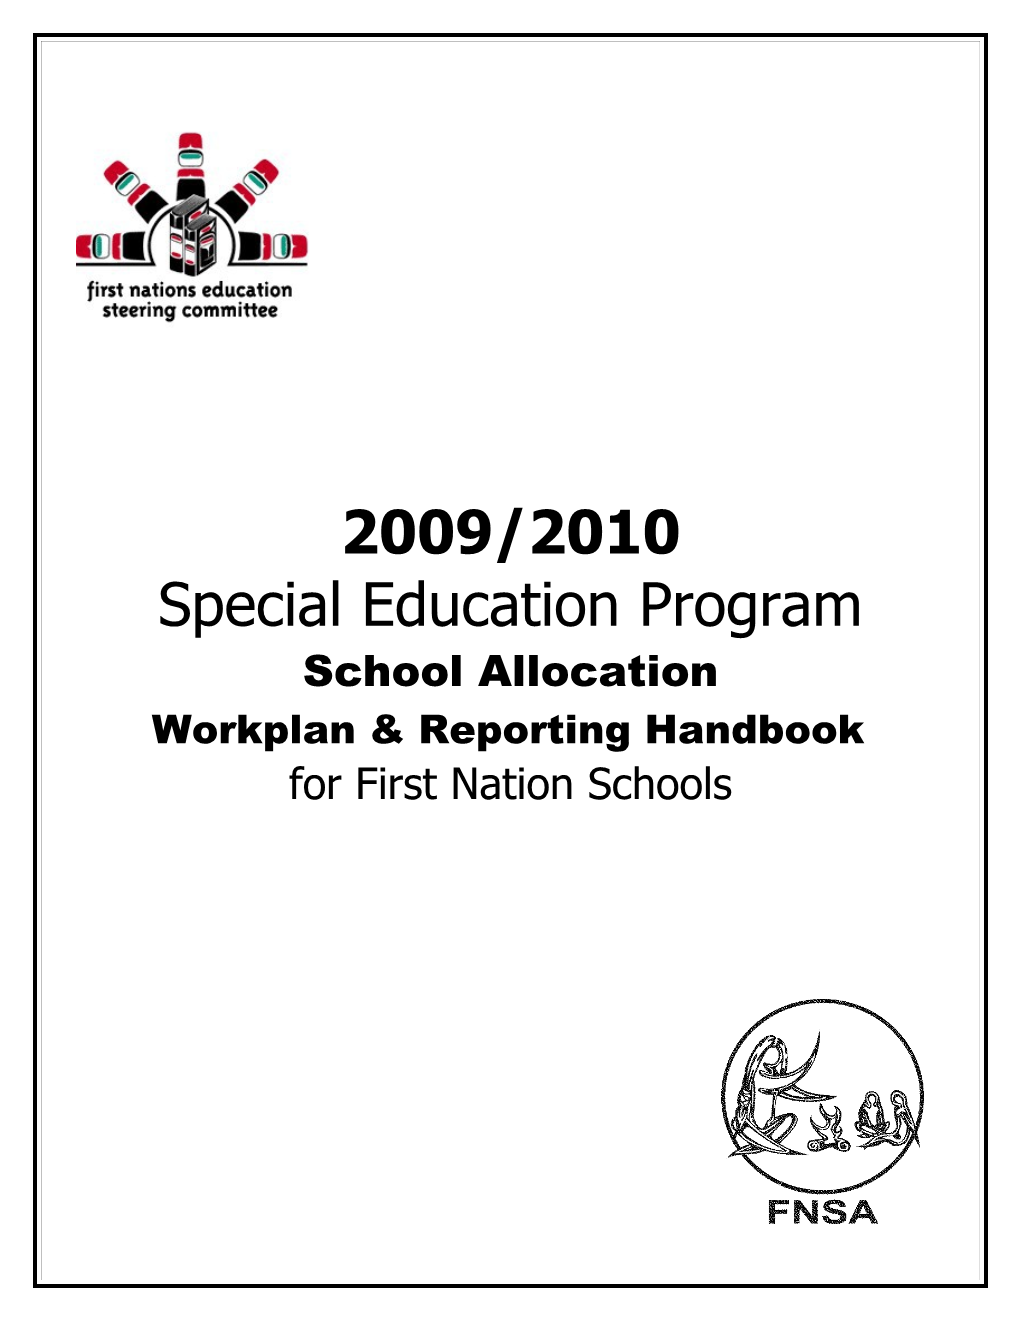 Special Education Program (SEP)